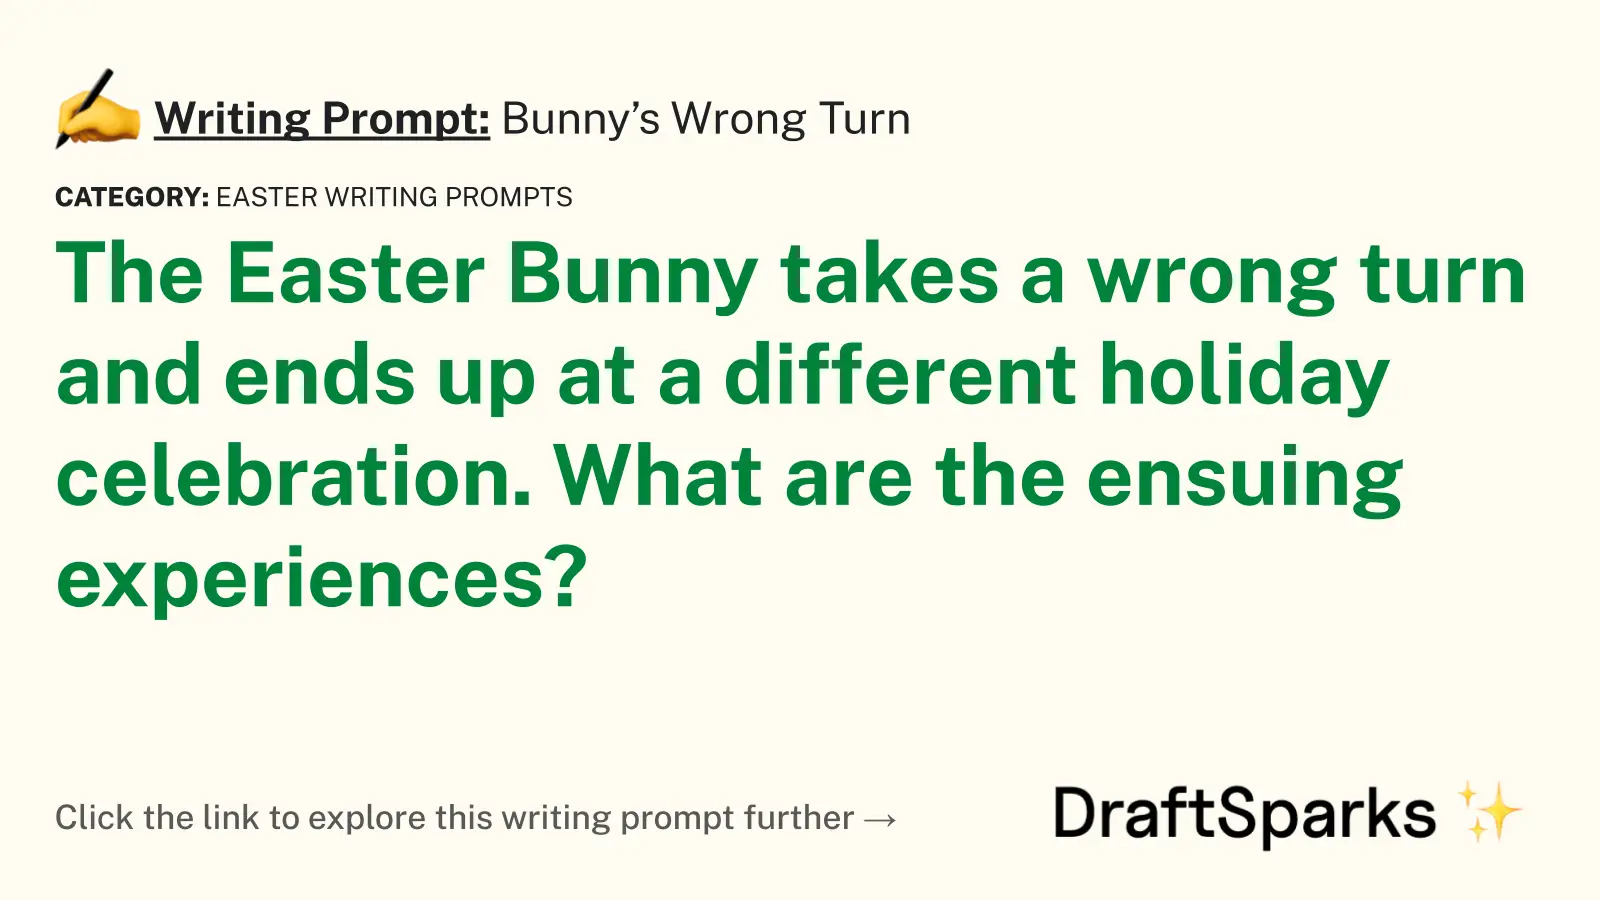 Bunny’s Wrong Turn